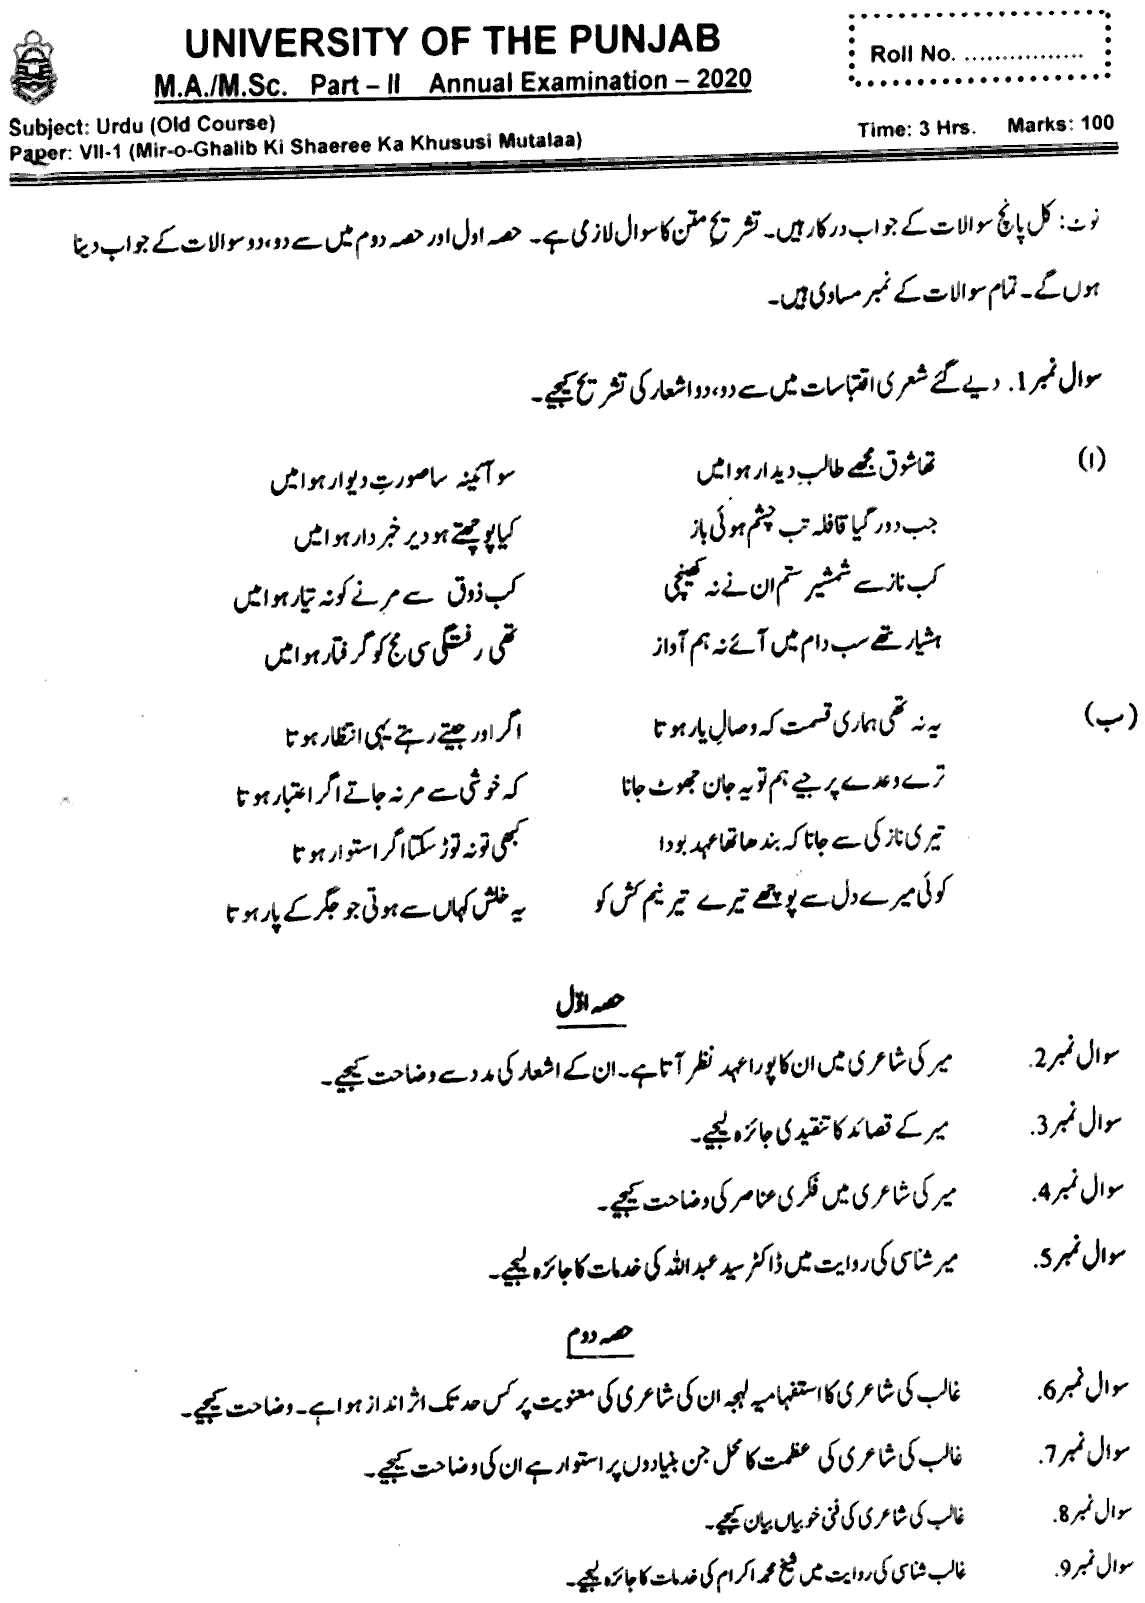 MA Part 2 Urdu Mir O Ghalib Key Shaeree Ka Khususi Mutalaa Past Paper 2020 Punjab University Old Syllabus